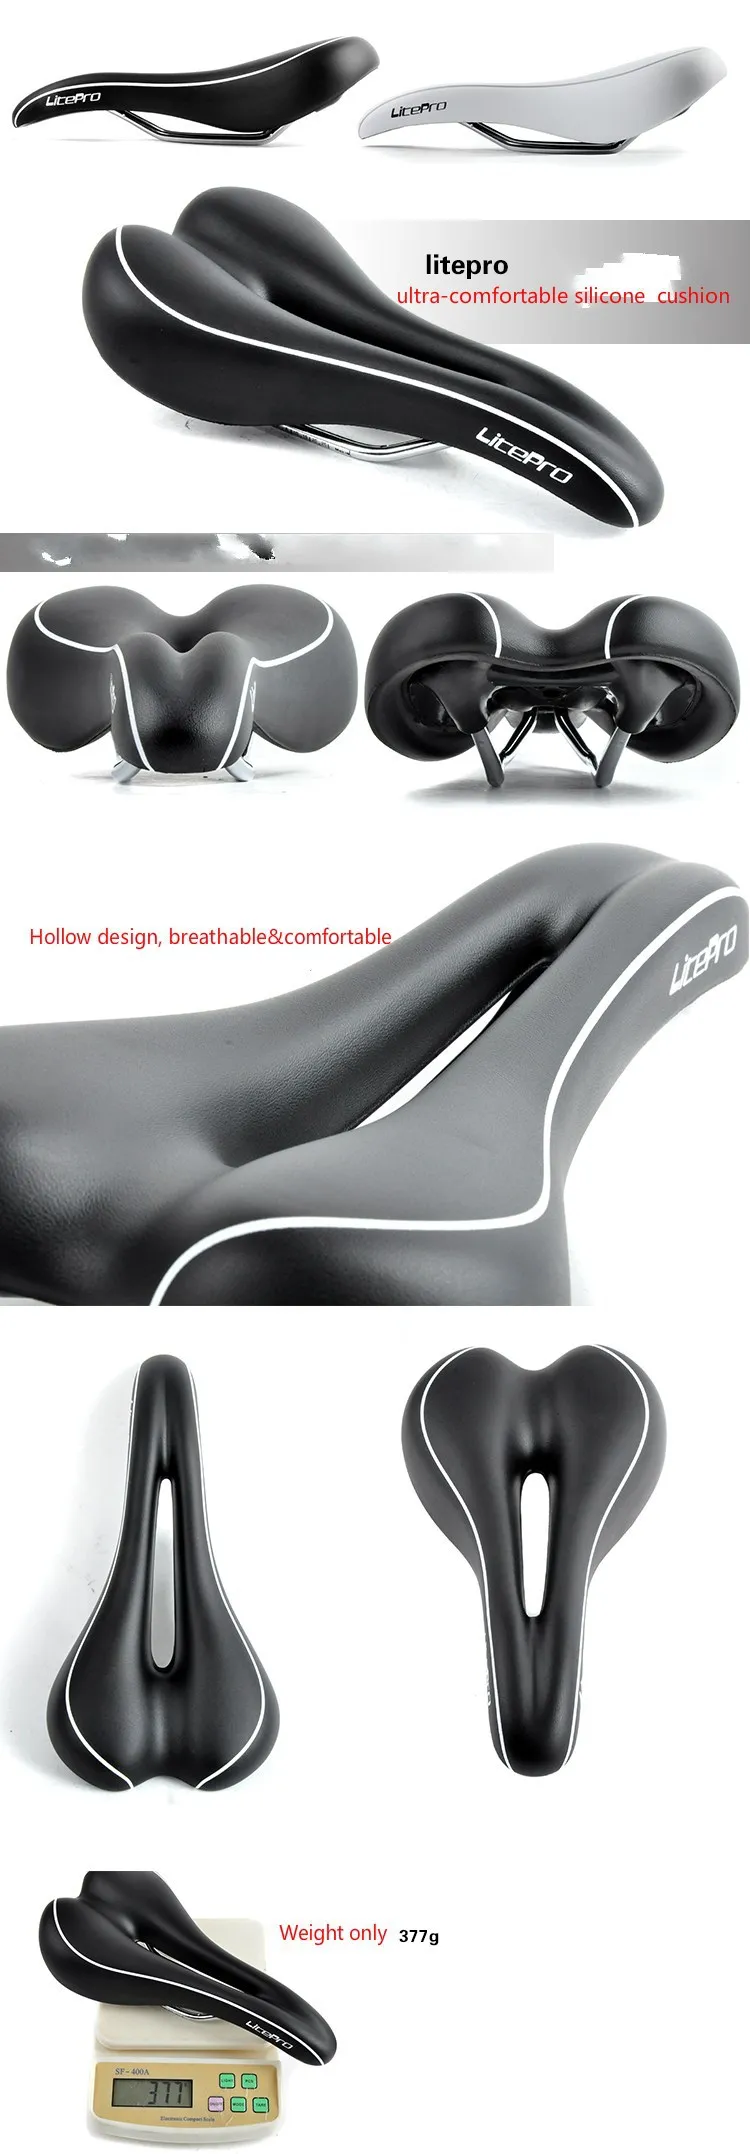 Litepro ультра комфортное bmx кожаное седло Силиконовое велосипедное седло MTB сиденье накладка на велосипедное седло